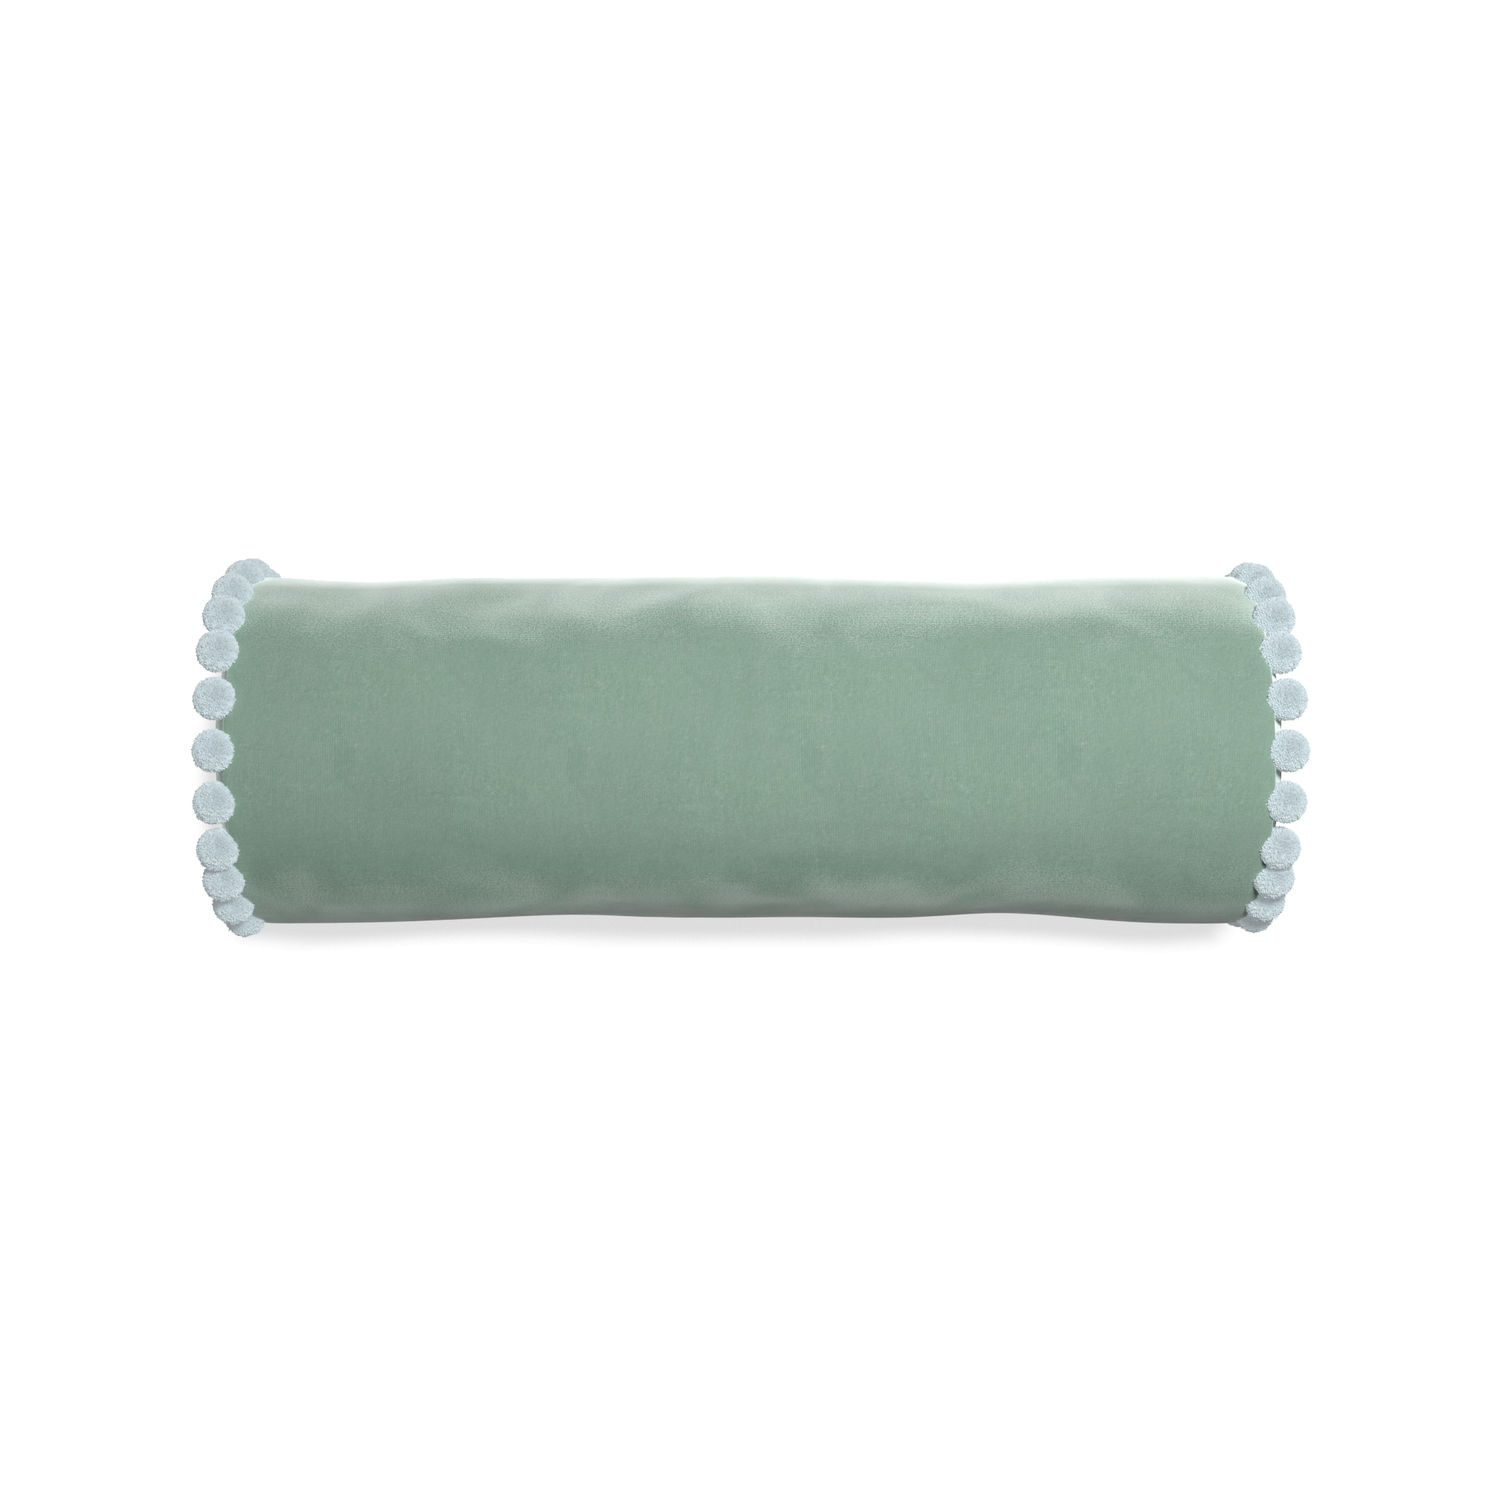 bolster blue green velvet pillow with light blue pom poms